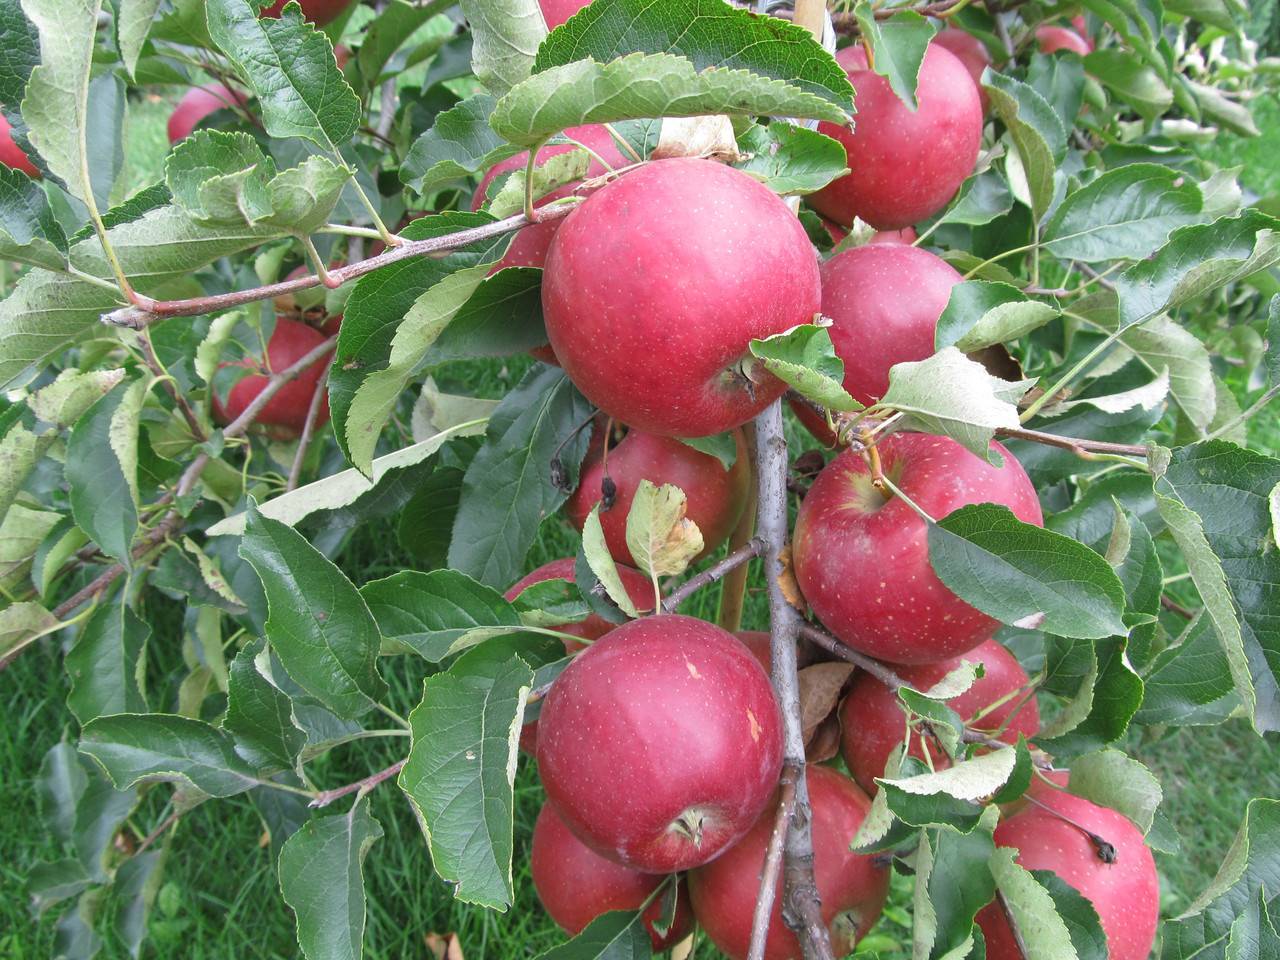 Сорт яблок «айдаред»: характеристика, достоинства и недостатки